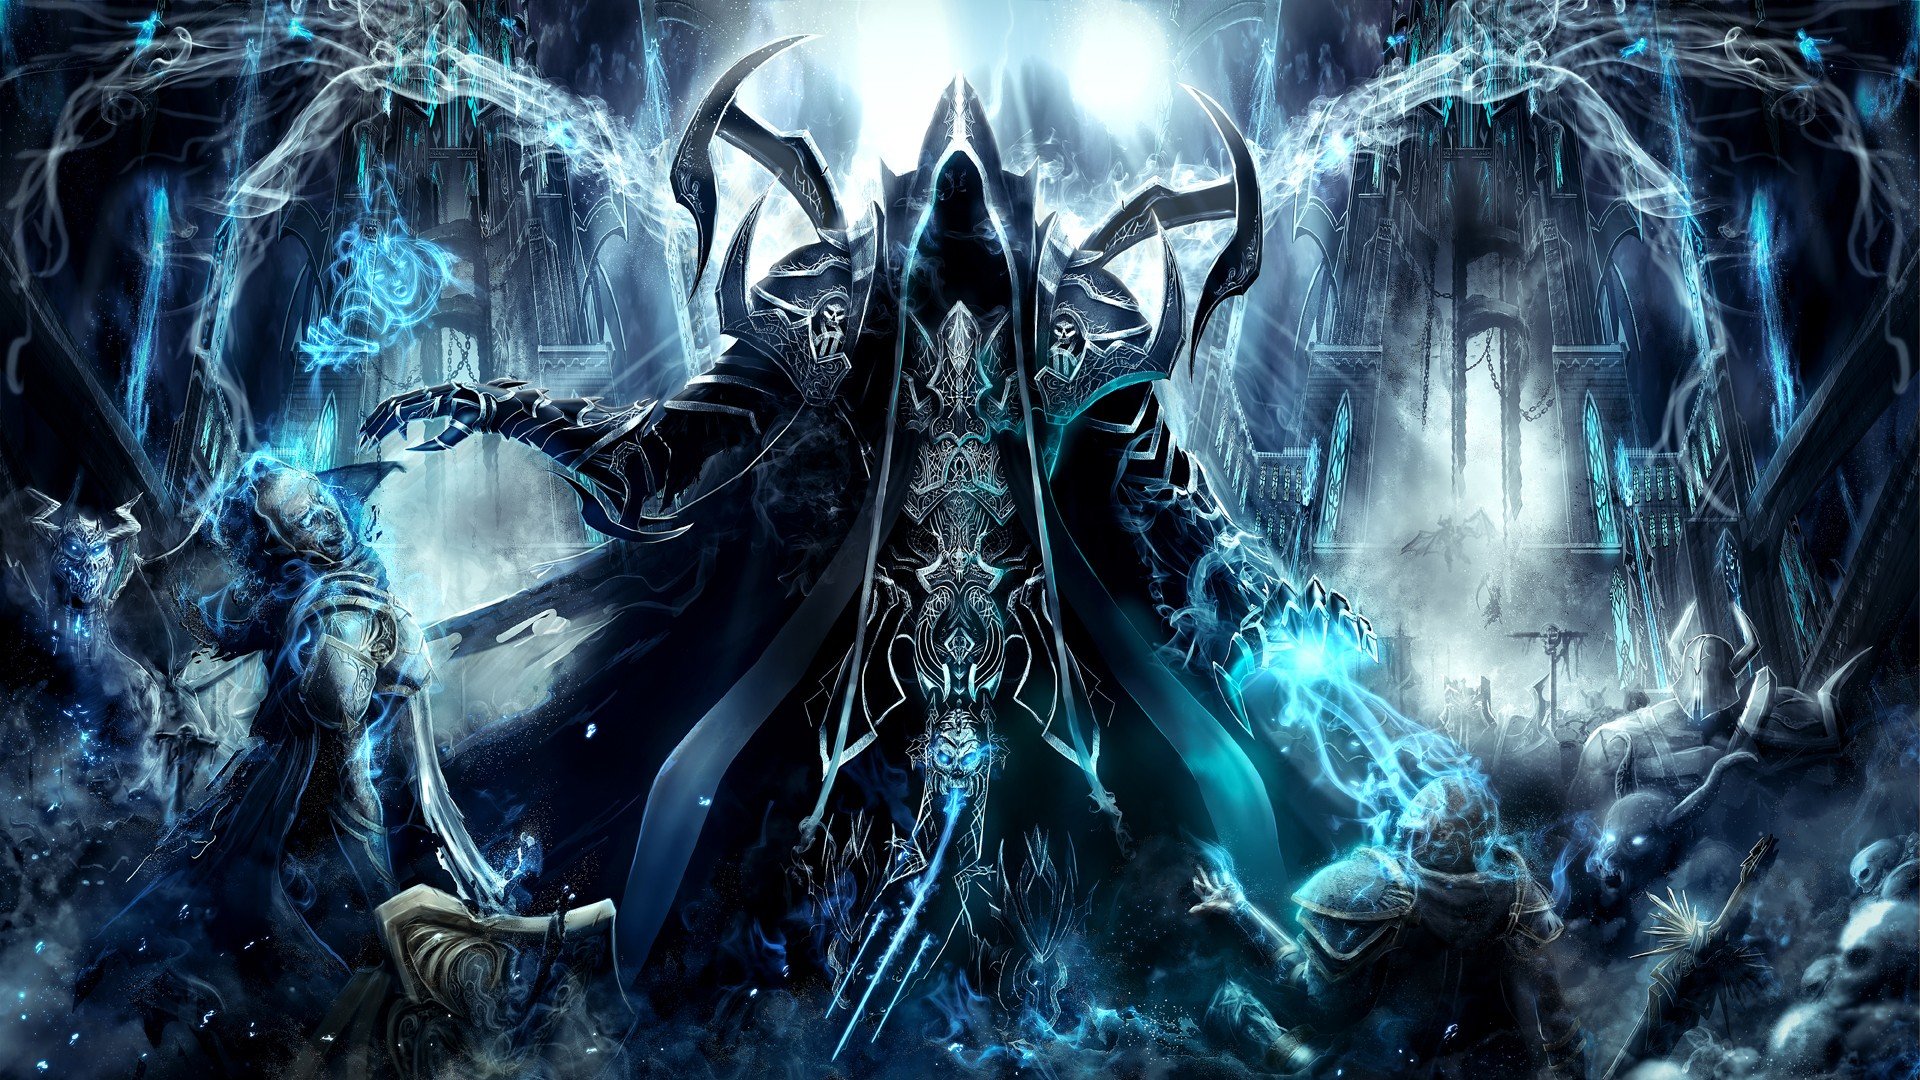 Diablo, Malthael, Diablo 3: Reaper of Souls Wallpaper